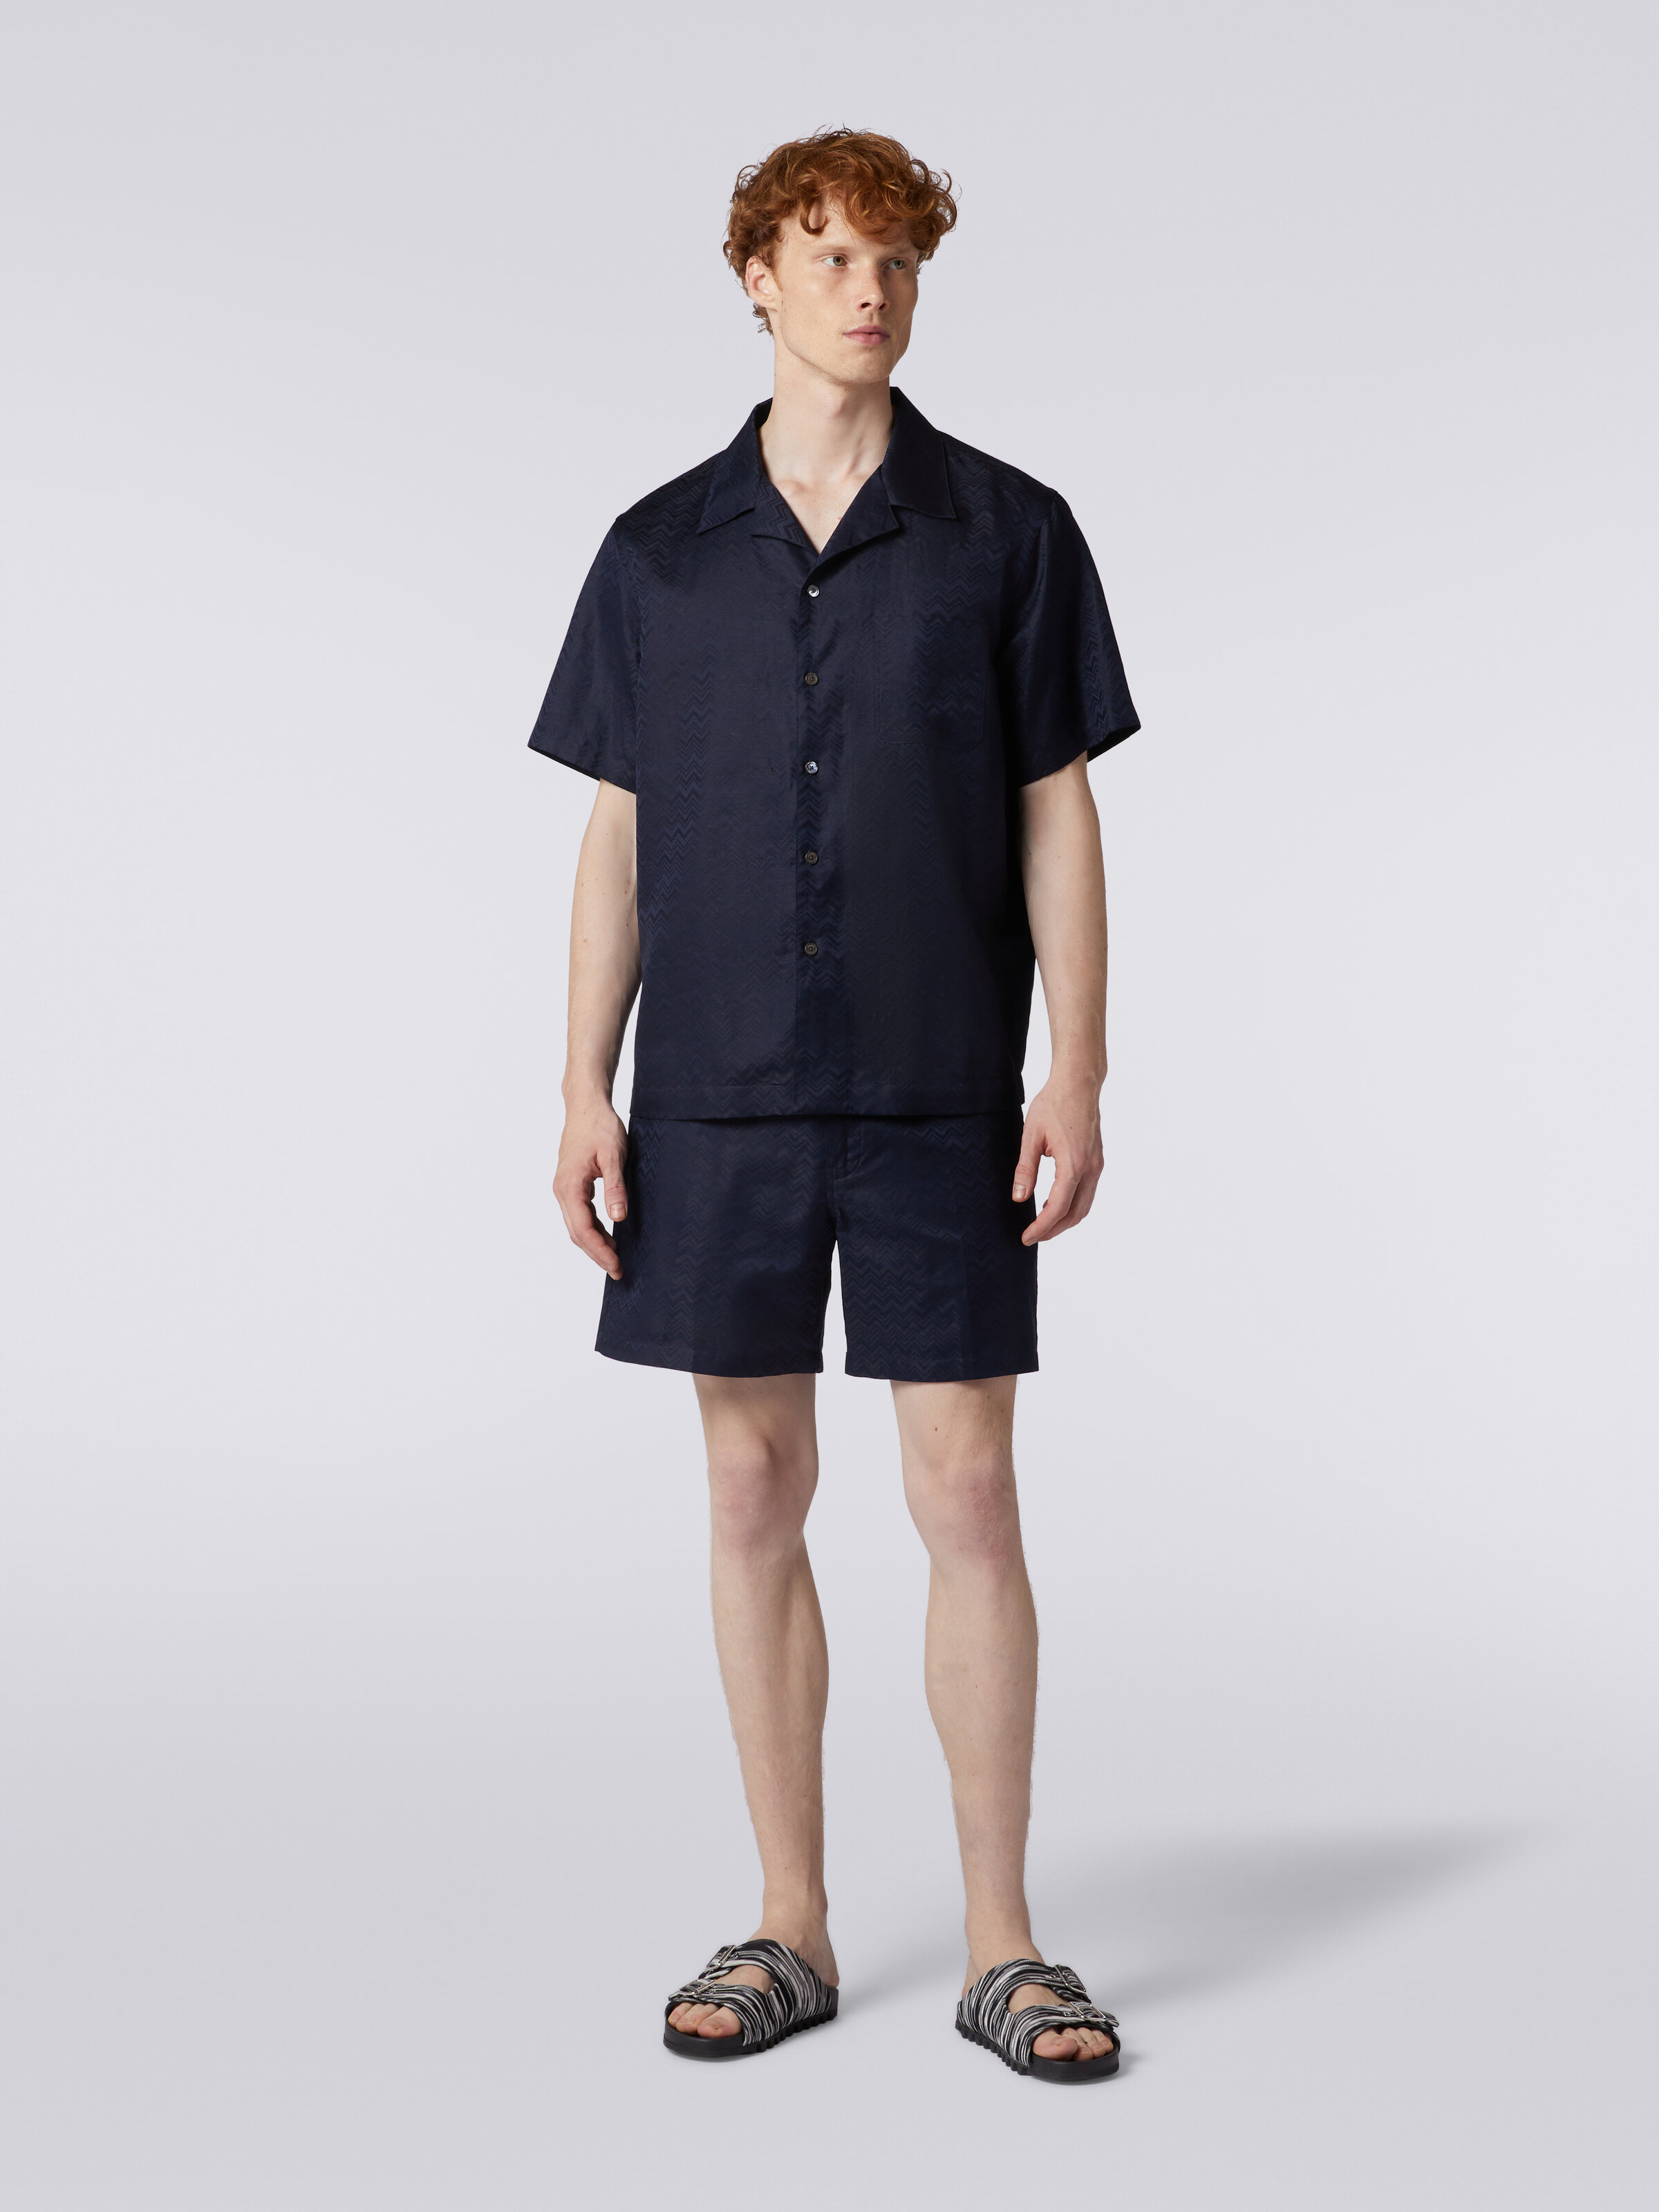 Bermuda shorts in cotton blend with zigzag pattern, Dark Blue - 1